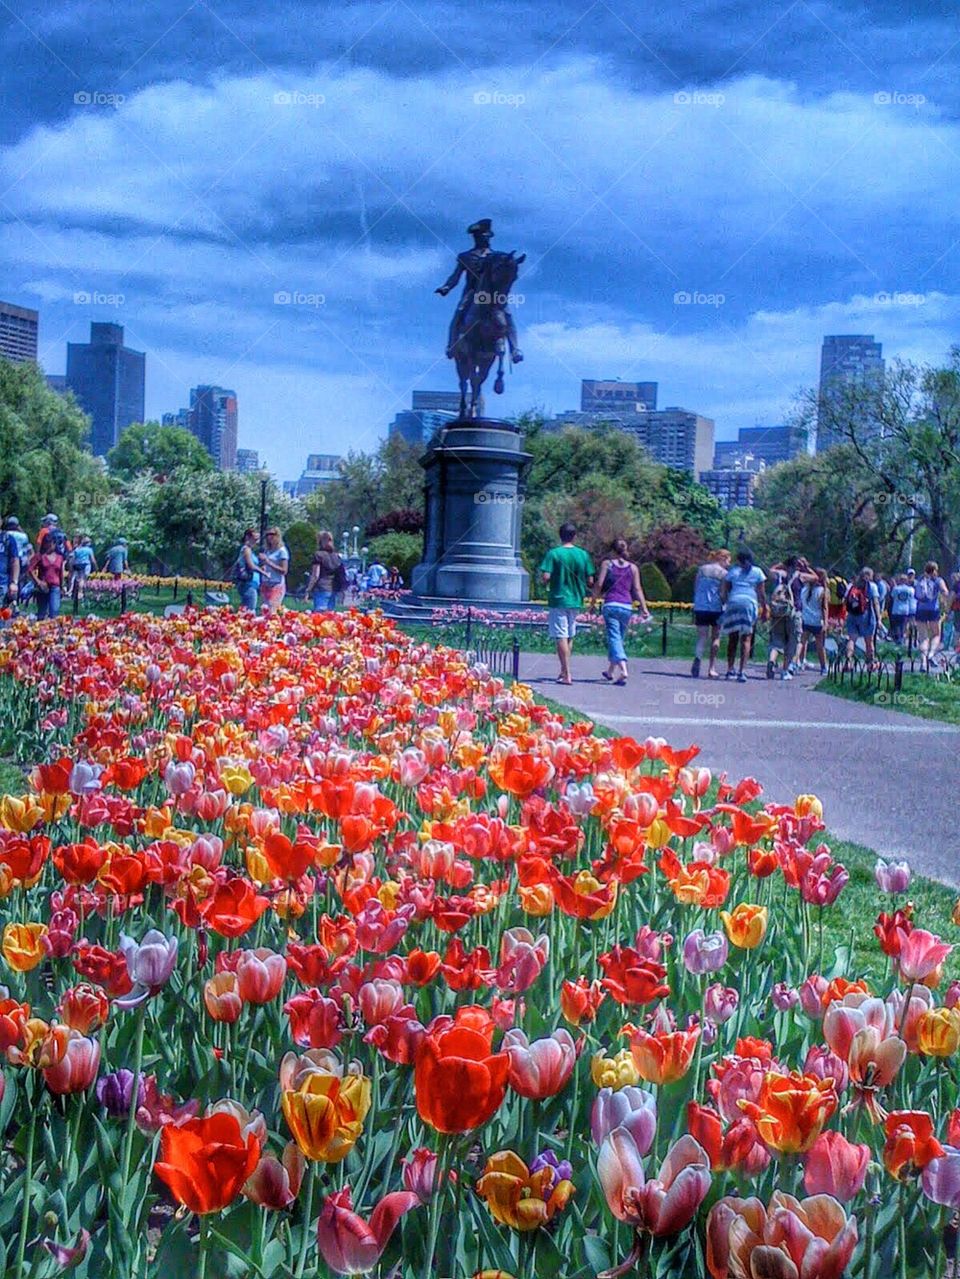 Boston in the Spring